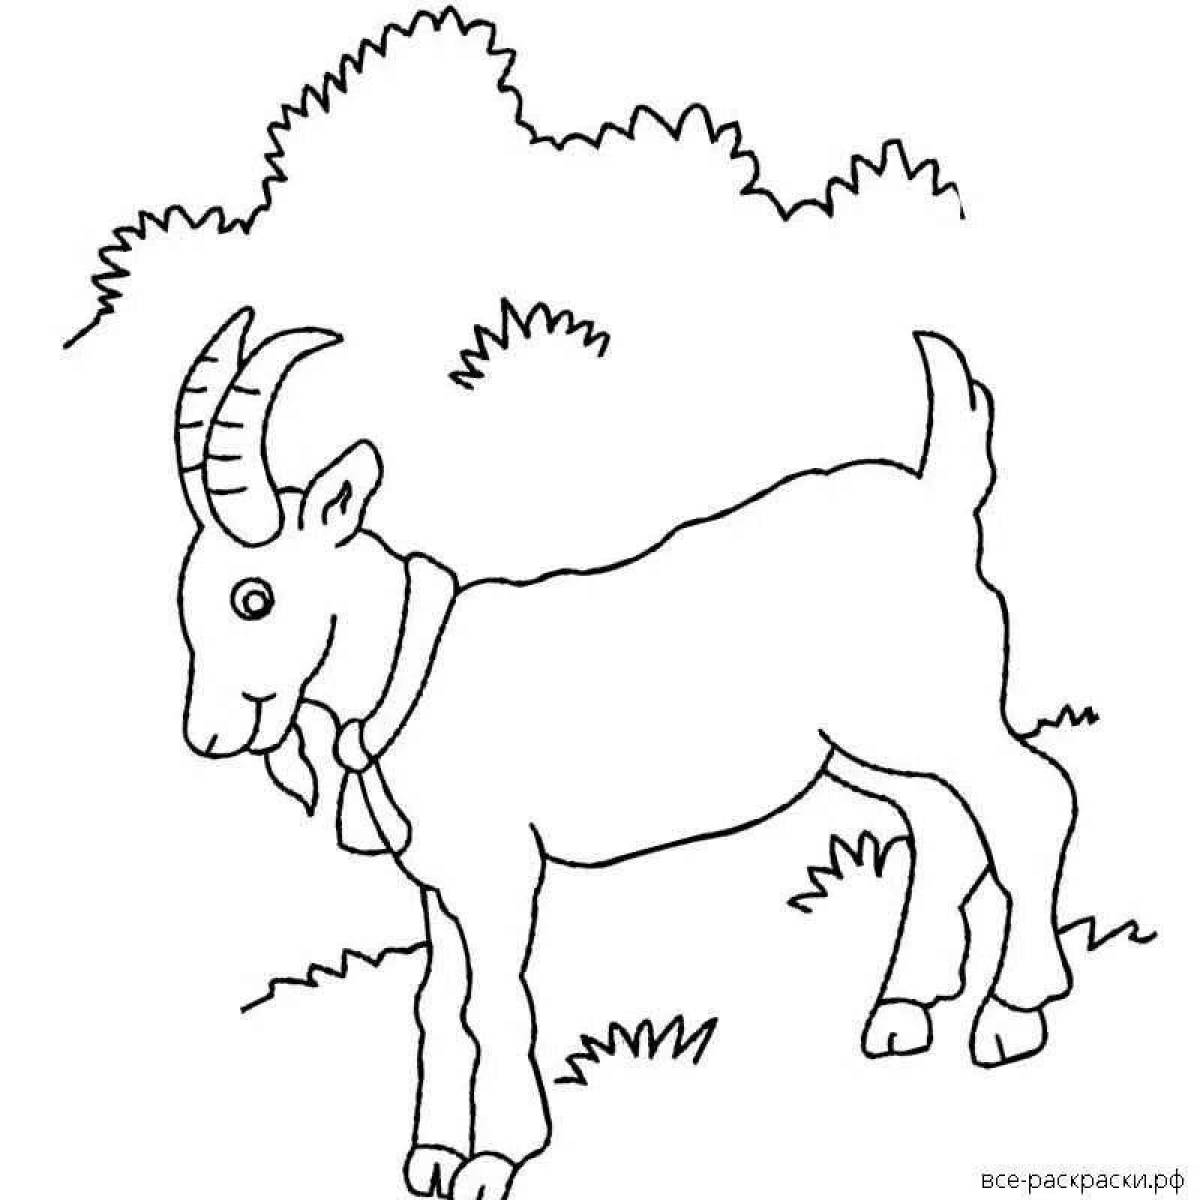 Fun coloring goat